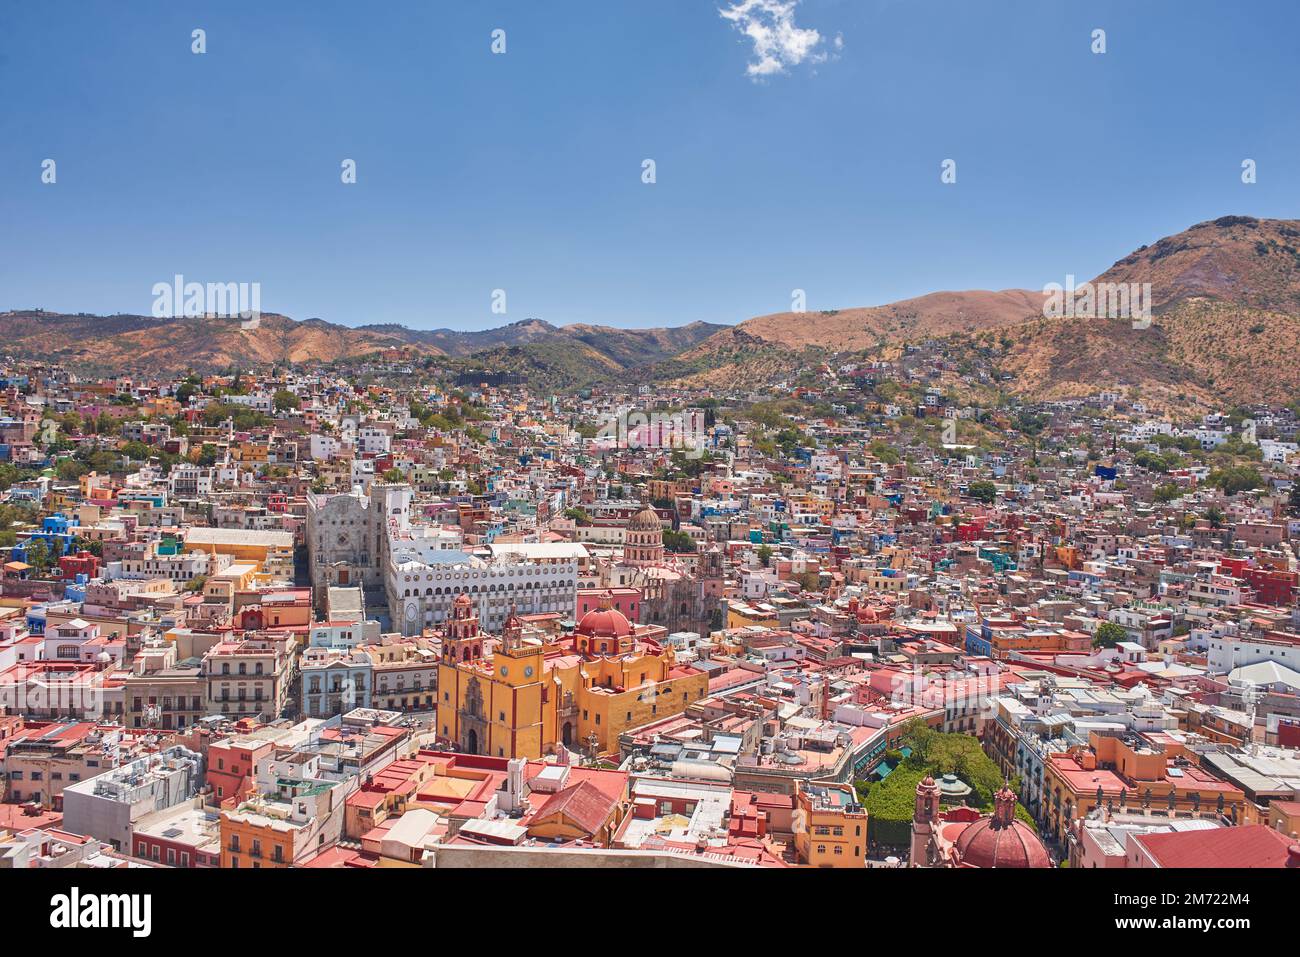 Fotografia aerea della città di Guanajuato durante il giorno con un cielo limpido, nessuna gente Foto Stock